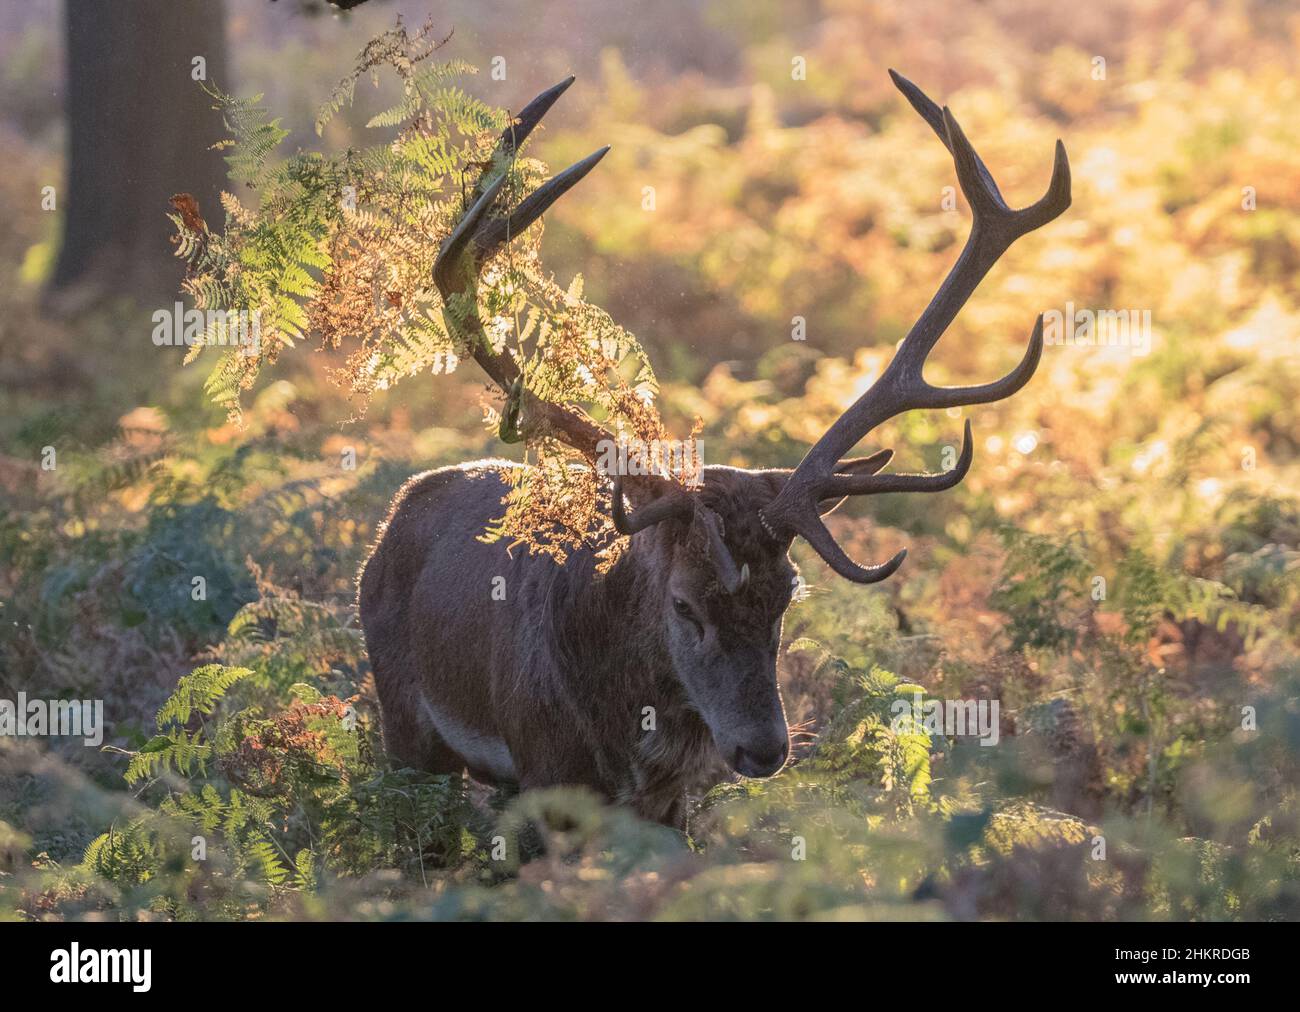 Un cerf de Roy Red Deer , montrant ses bois décorés entre crochets pour impressionner les dames. . Pris en pleine saison dans des couleurs d'automne glorieuses. ROYAUME-UNI Banque D'Images